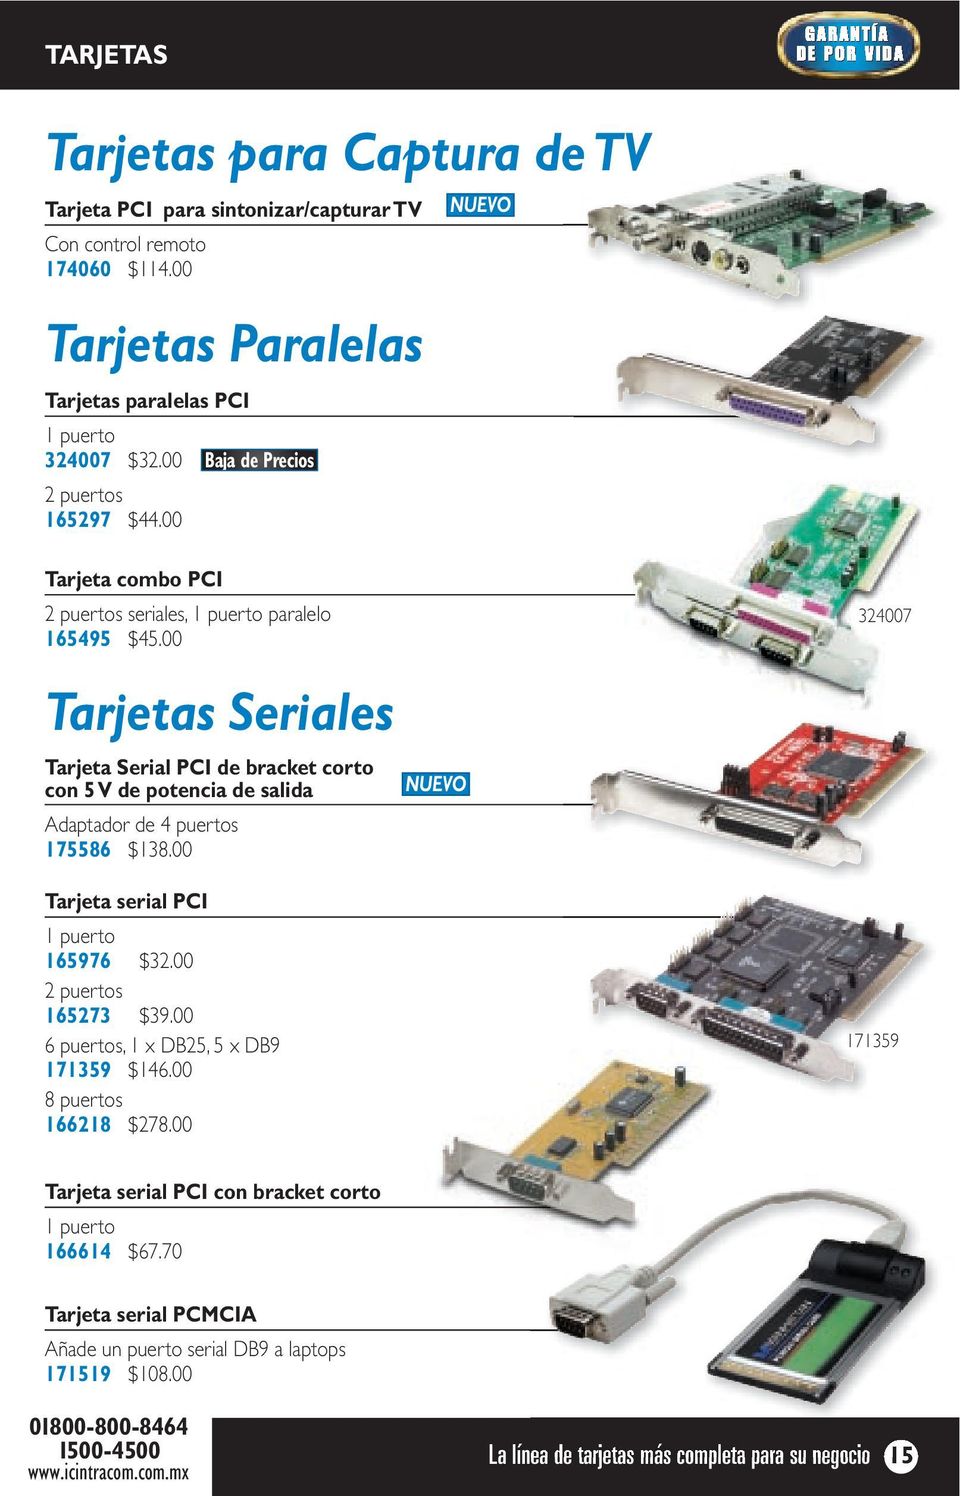 00 324007 Tarjetas Seriales Tarjeta Serial PCI de bracket corto con 5 V de potencia de salida Adaptador de 4 puertos 175586 $138.00 NUEVO Tarjeta serial PCI 1 puerto 165976 $32.